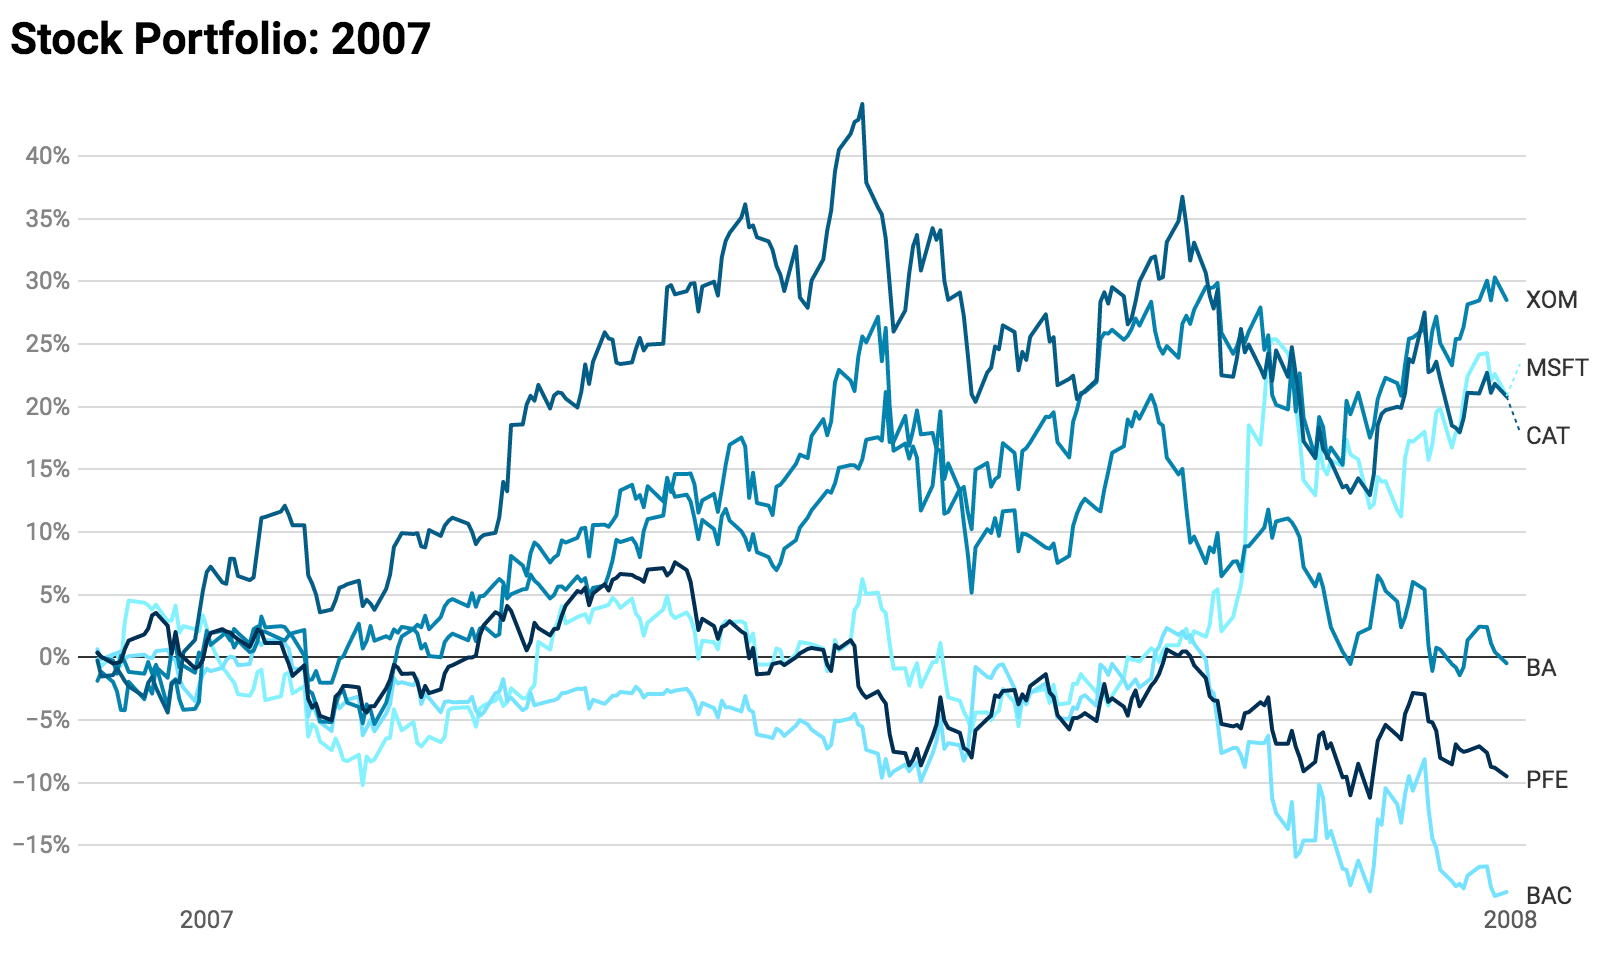 Stocks in 2007